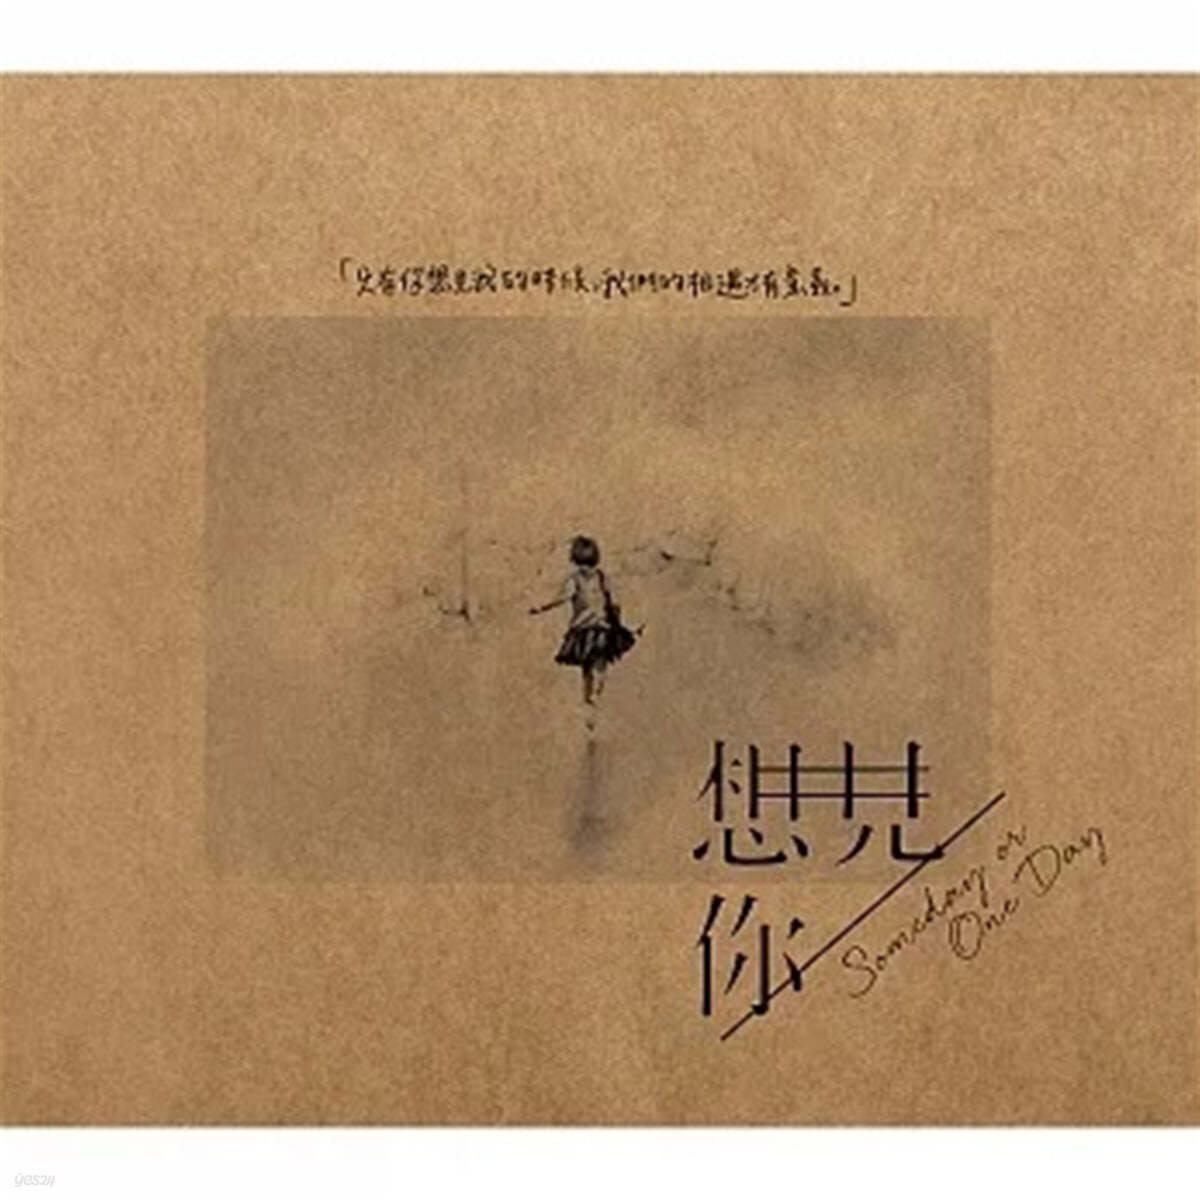 想見Ni someday or one day : 상견니 드라마 OST CD (2CD)